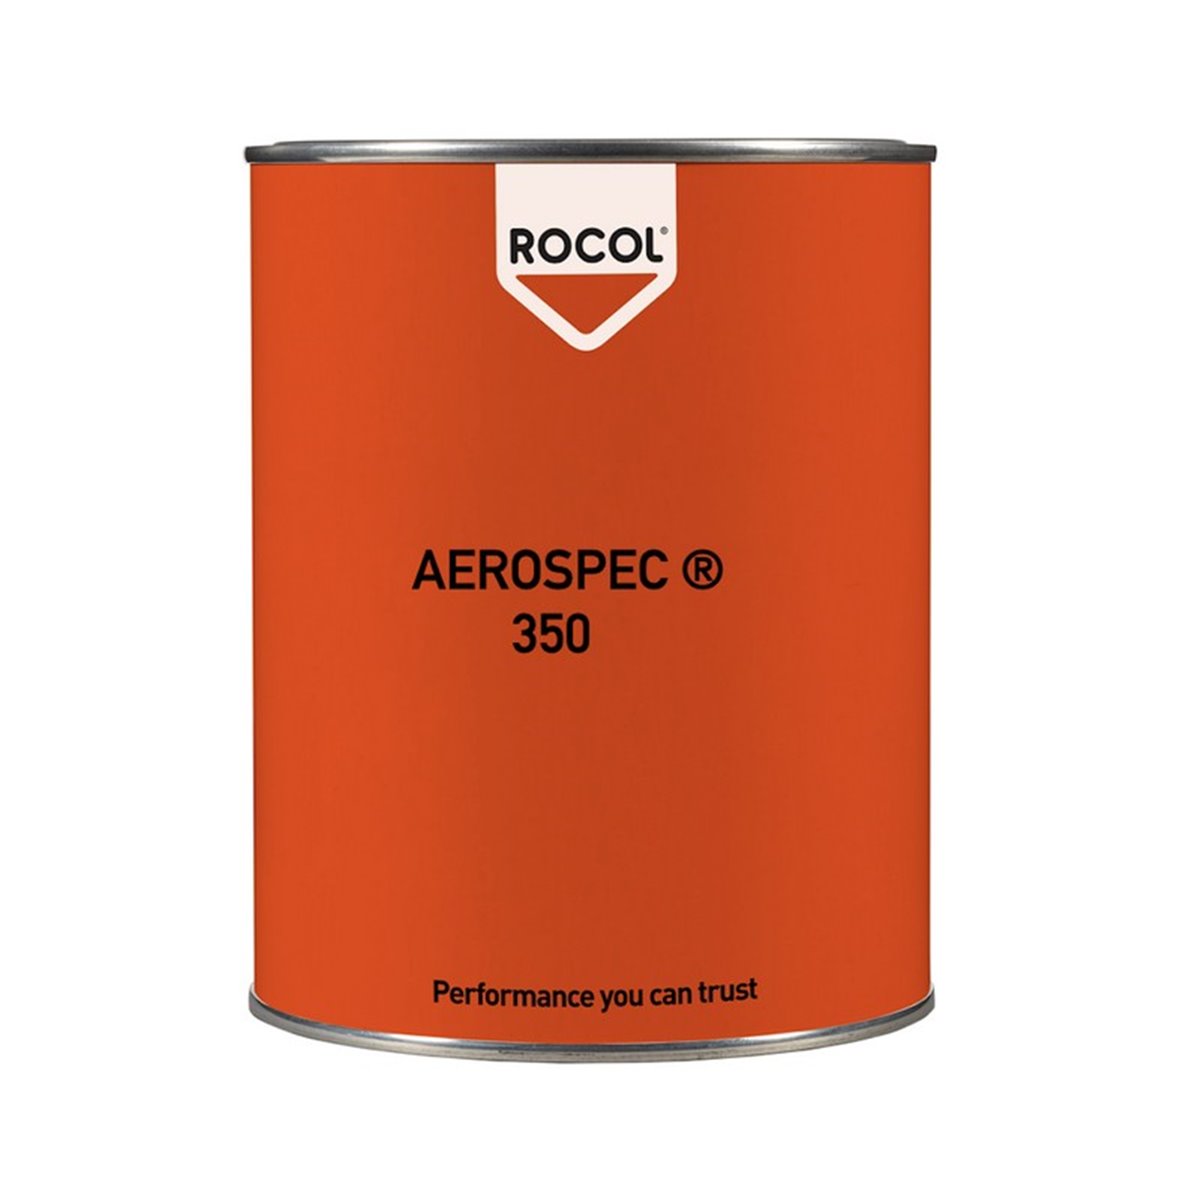 AEROSPEC 350 Rocol 3kg RS16626